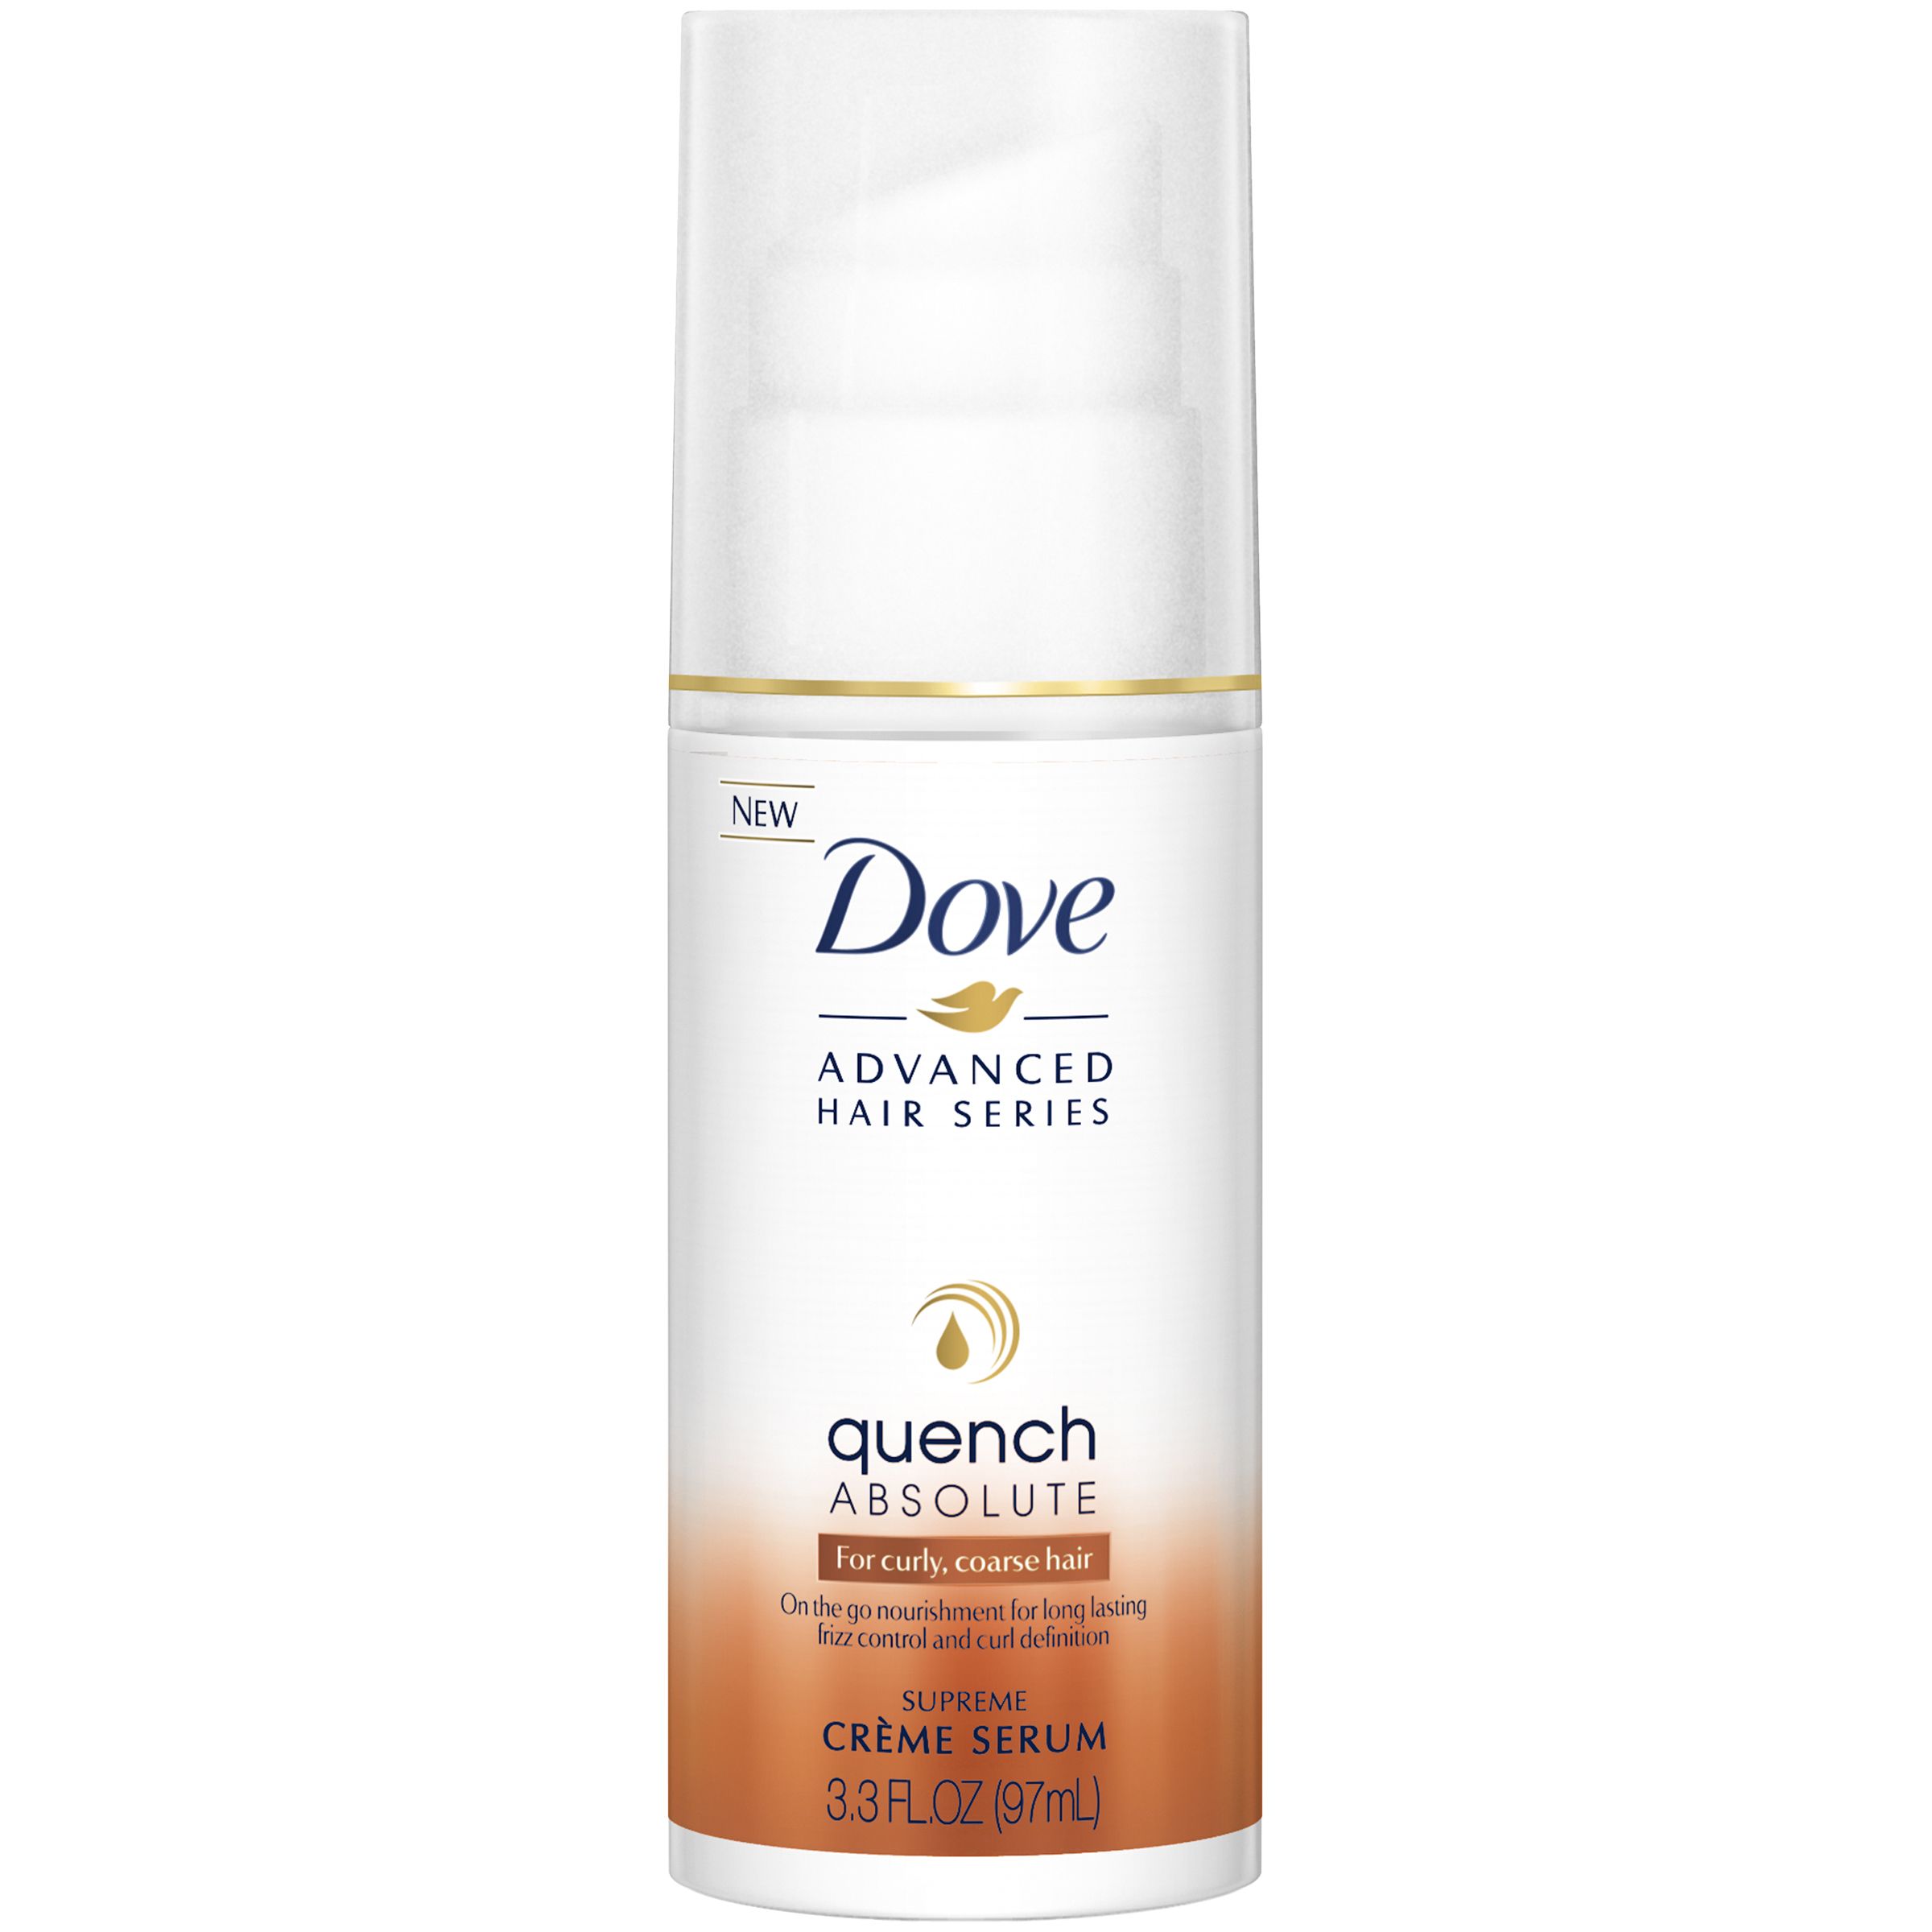 Dove Advanced Hair Series Quench Absolute Supreme Creme Serum 3.3 fl. oz. | Kmart